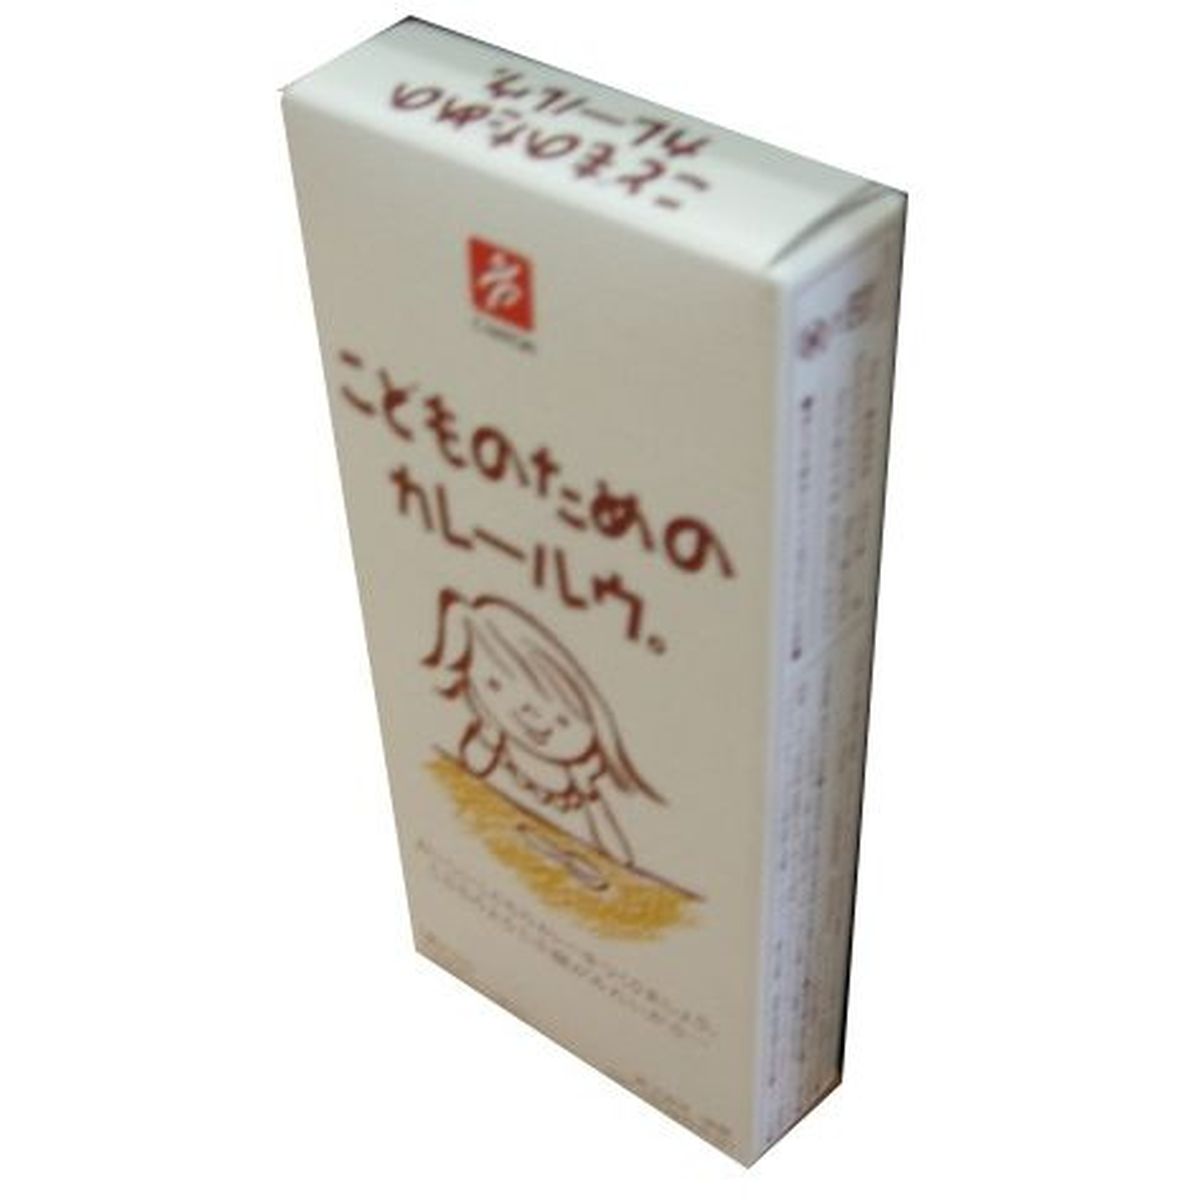 【30個入リ】キャニオン コドモノタメノカレールウ 150g